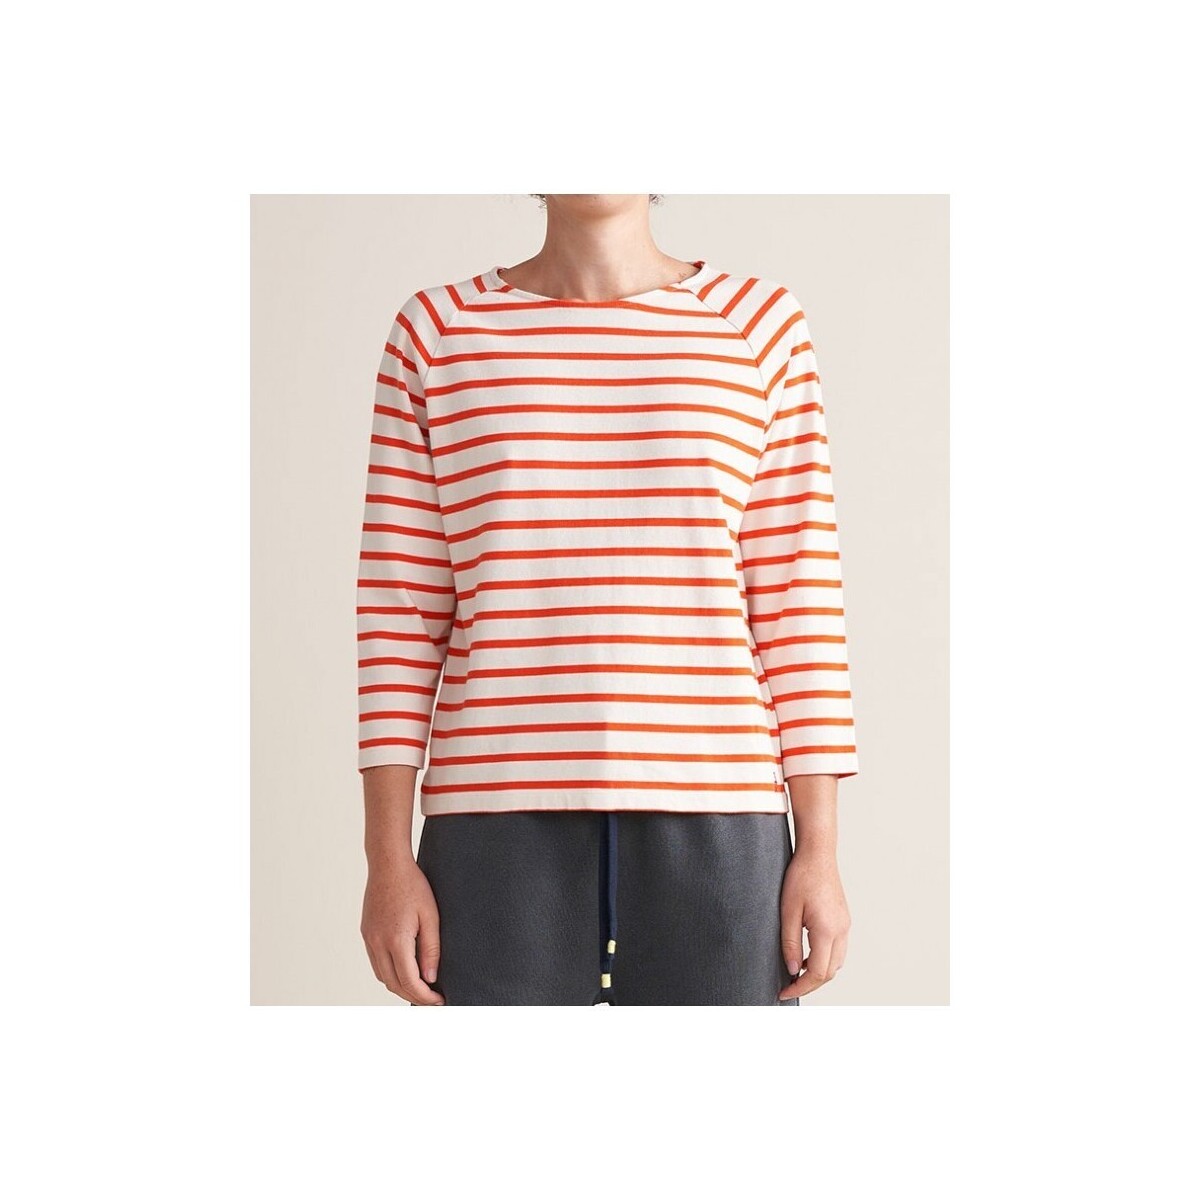 Vêtements Femme T-shirts manches courtes Bellerose Maow Tee Stripes Multicolore